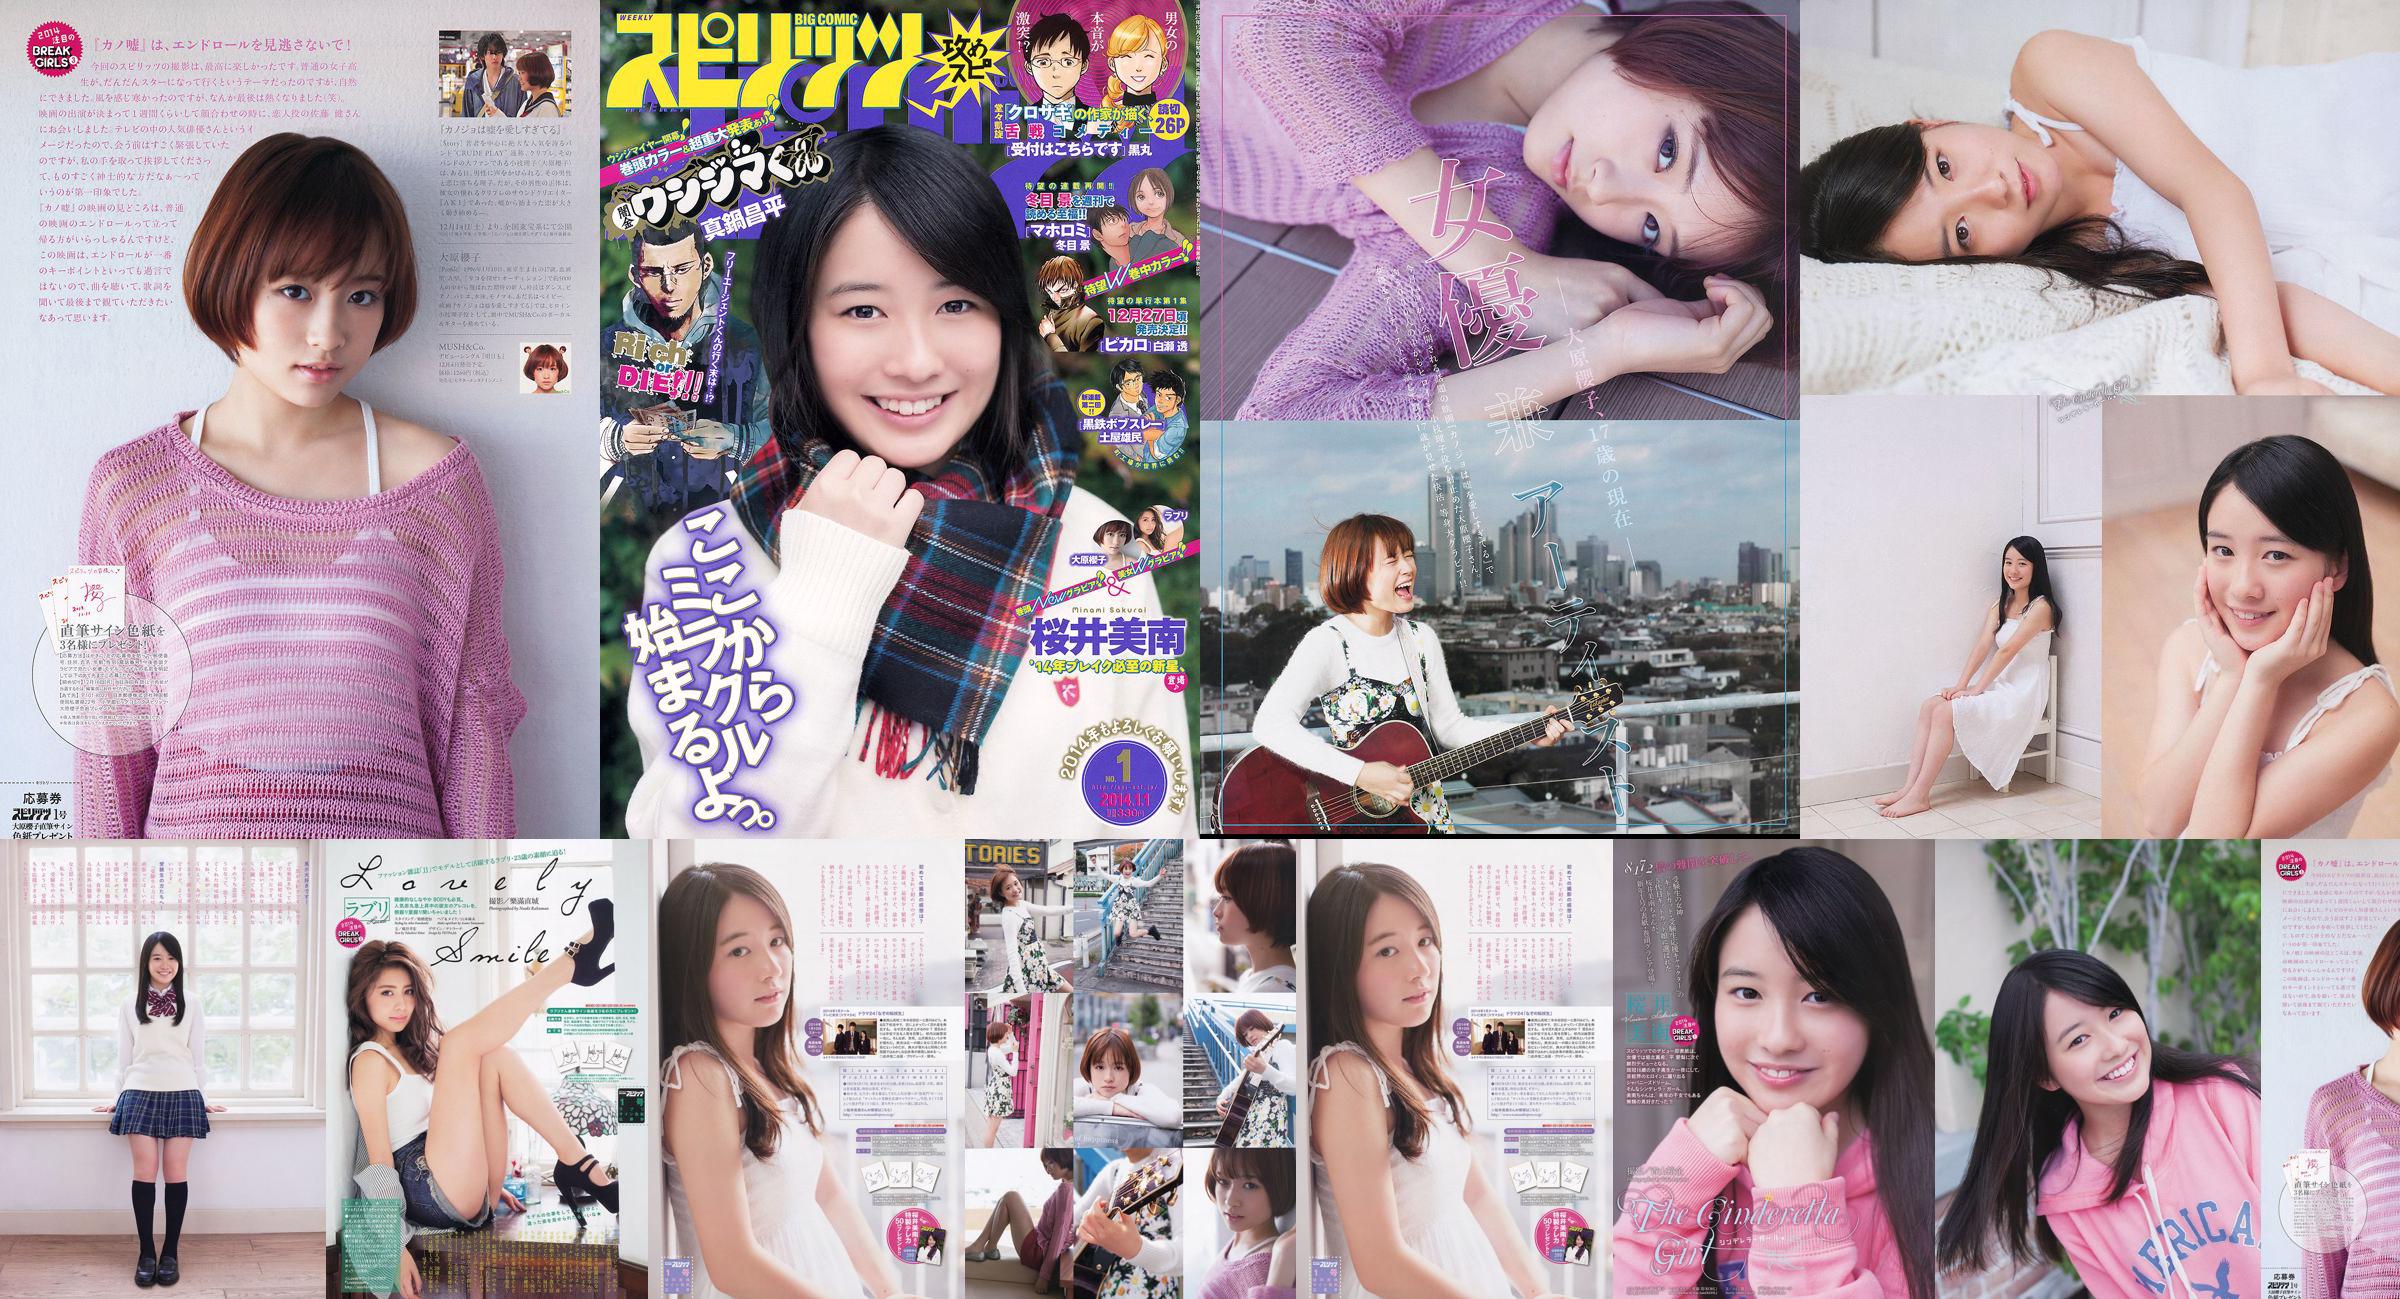 [Wöchentliche große Comic-Geister] Sakurai Minan Ohara Sakurako 2014 No.01 Photo Magazine No.ac4f29 Seite 5